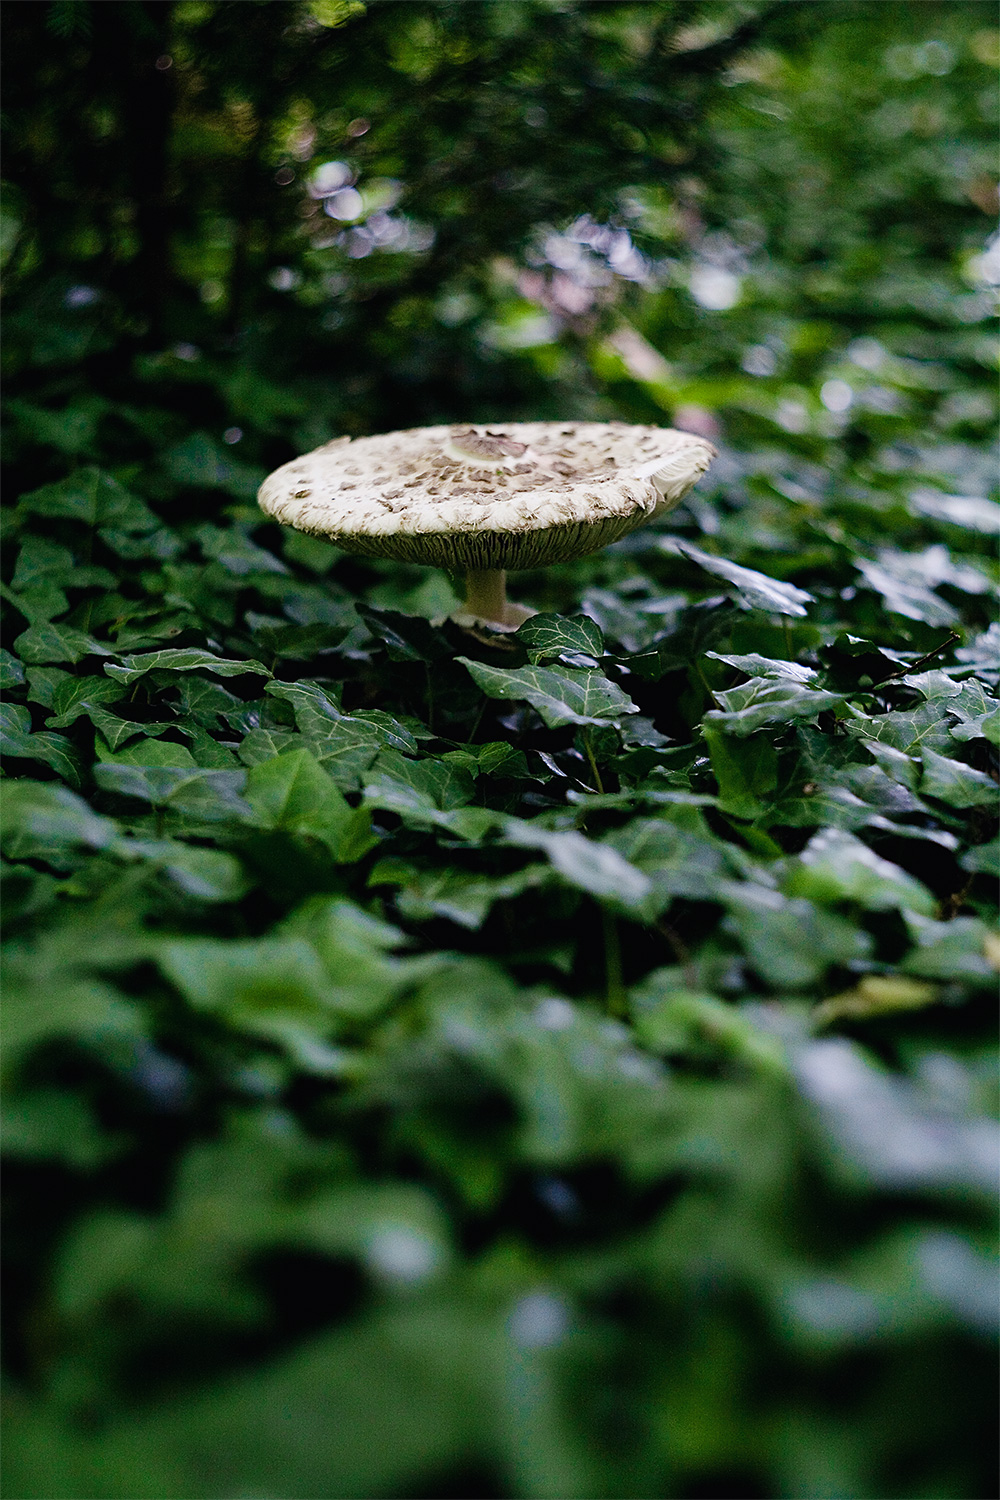 ivyshroom03.jpg